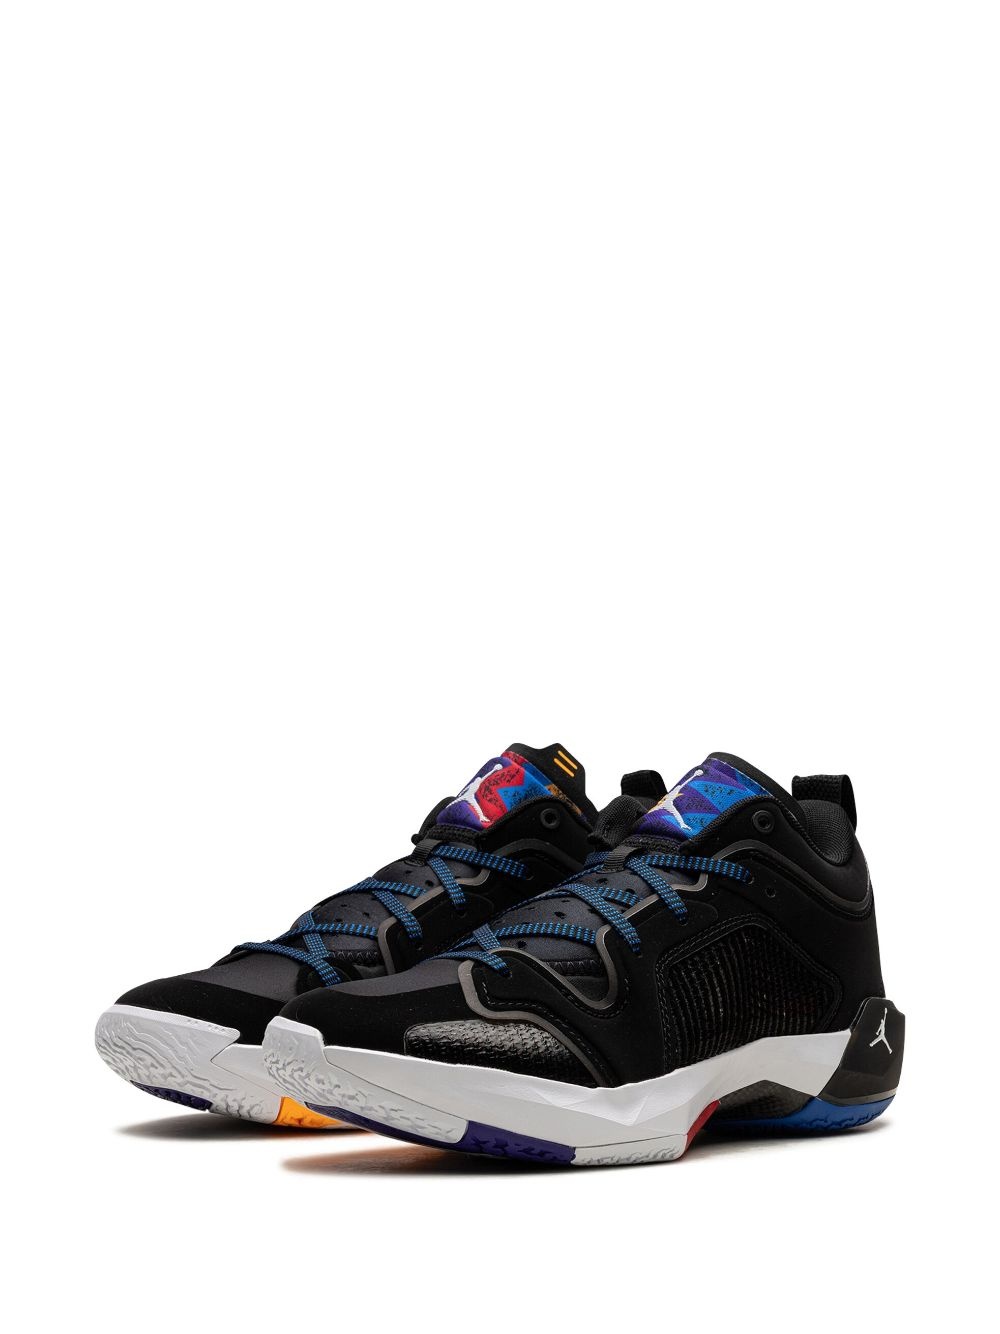 Air Jordan XXXVII "Nothing But Net" sneakers - 4